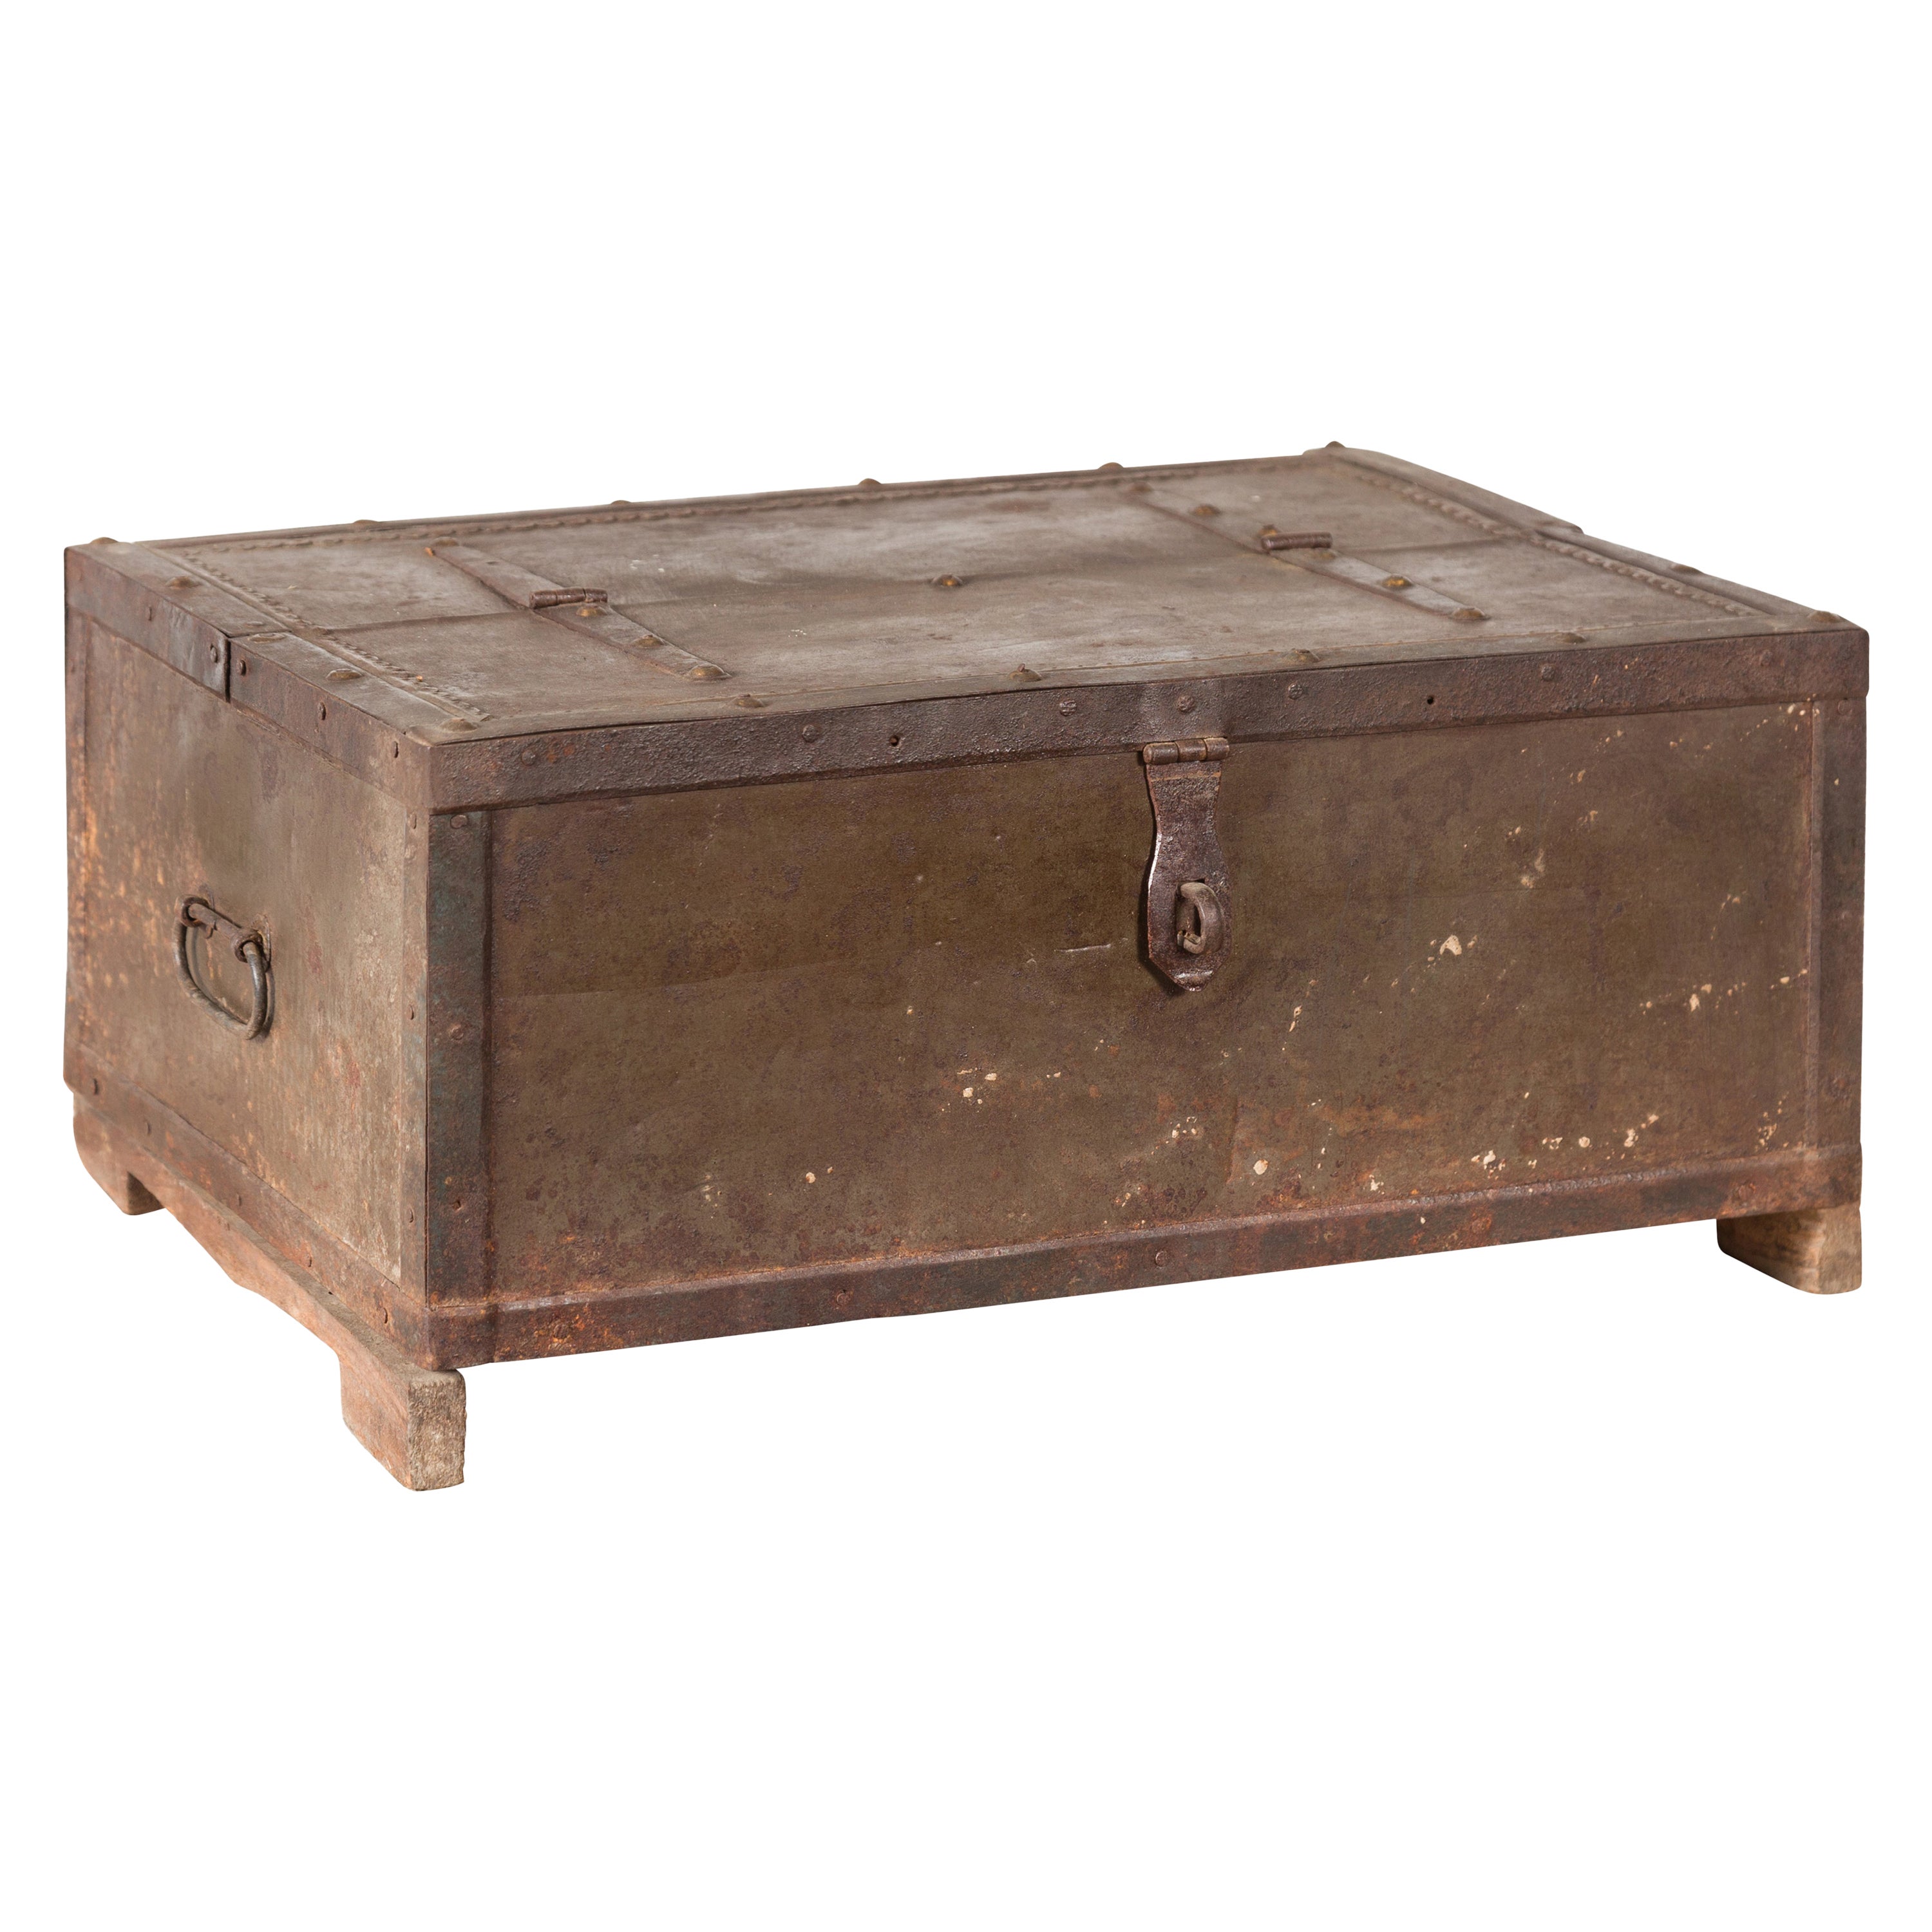 Indische Schachtel aus dem 19. Jahrhundert mit Metalleinband und geflochtenem Holzsockel